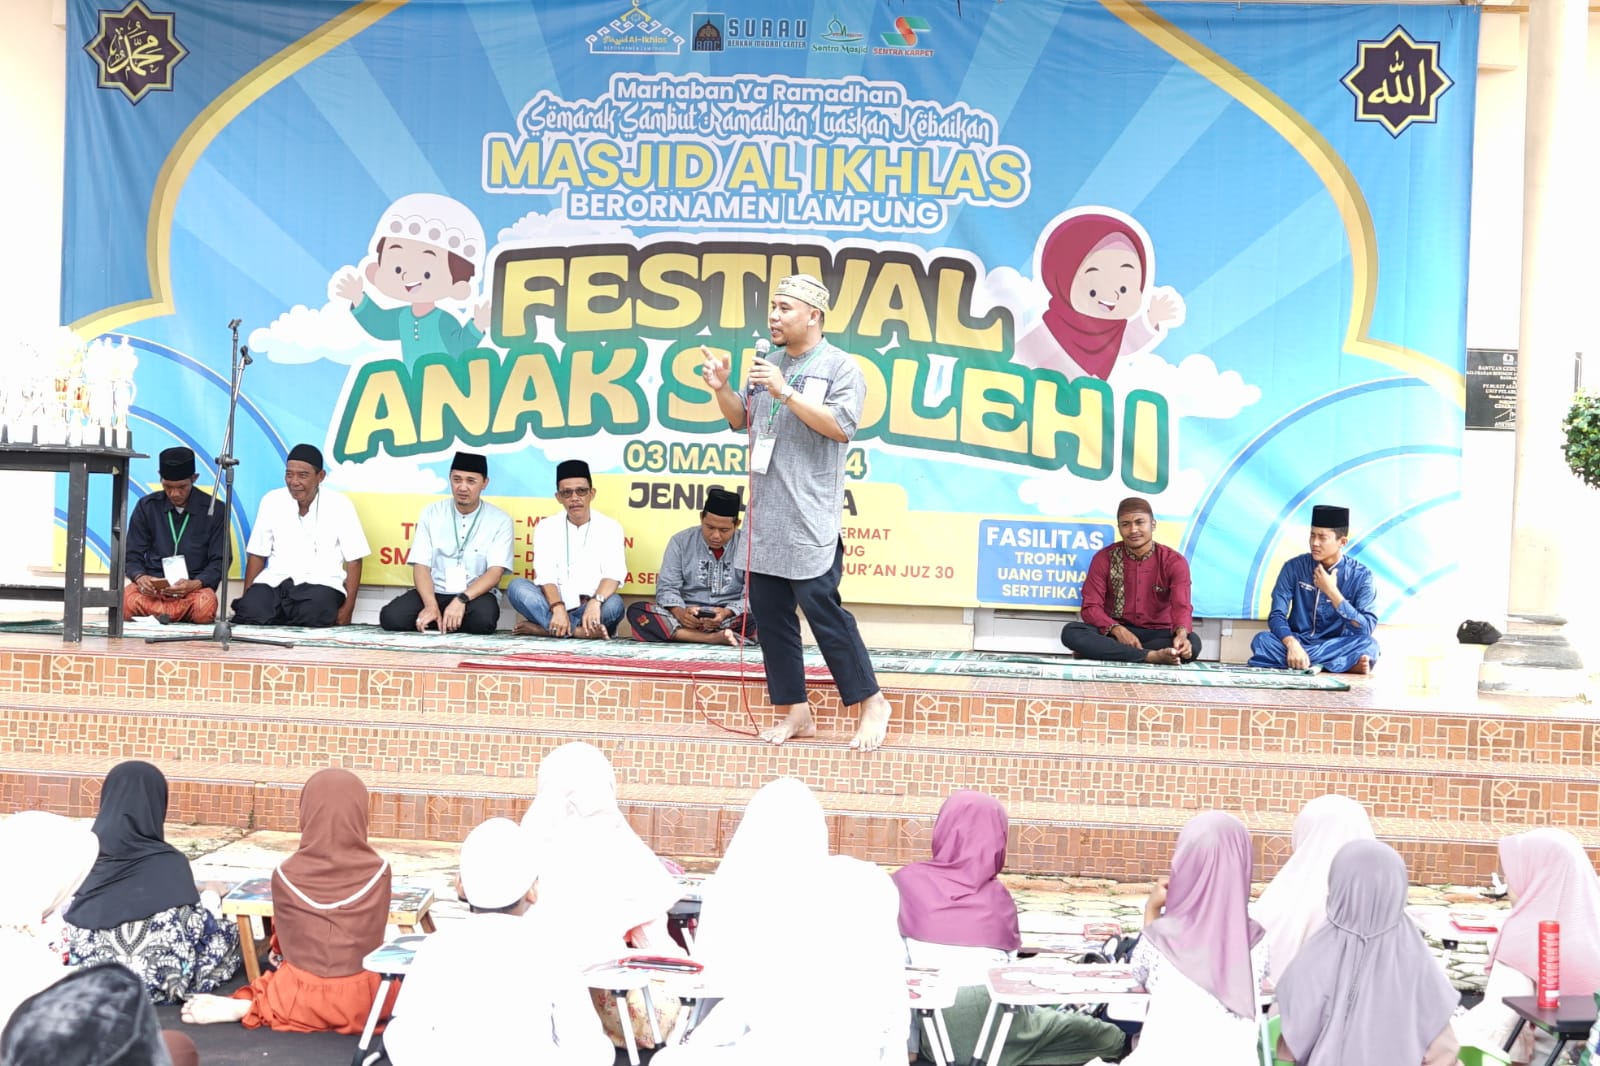 Ramadan Luaskan Kebaikan: Gebyar Sambut Ramadan di Masjid Al Ikhlas Berornamen Lampung